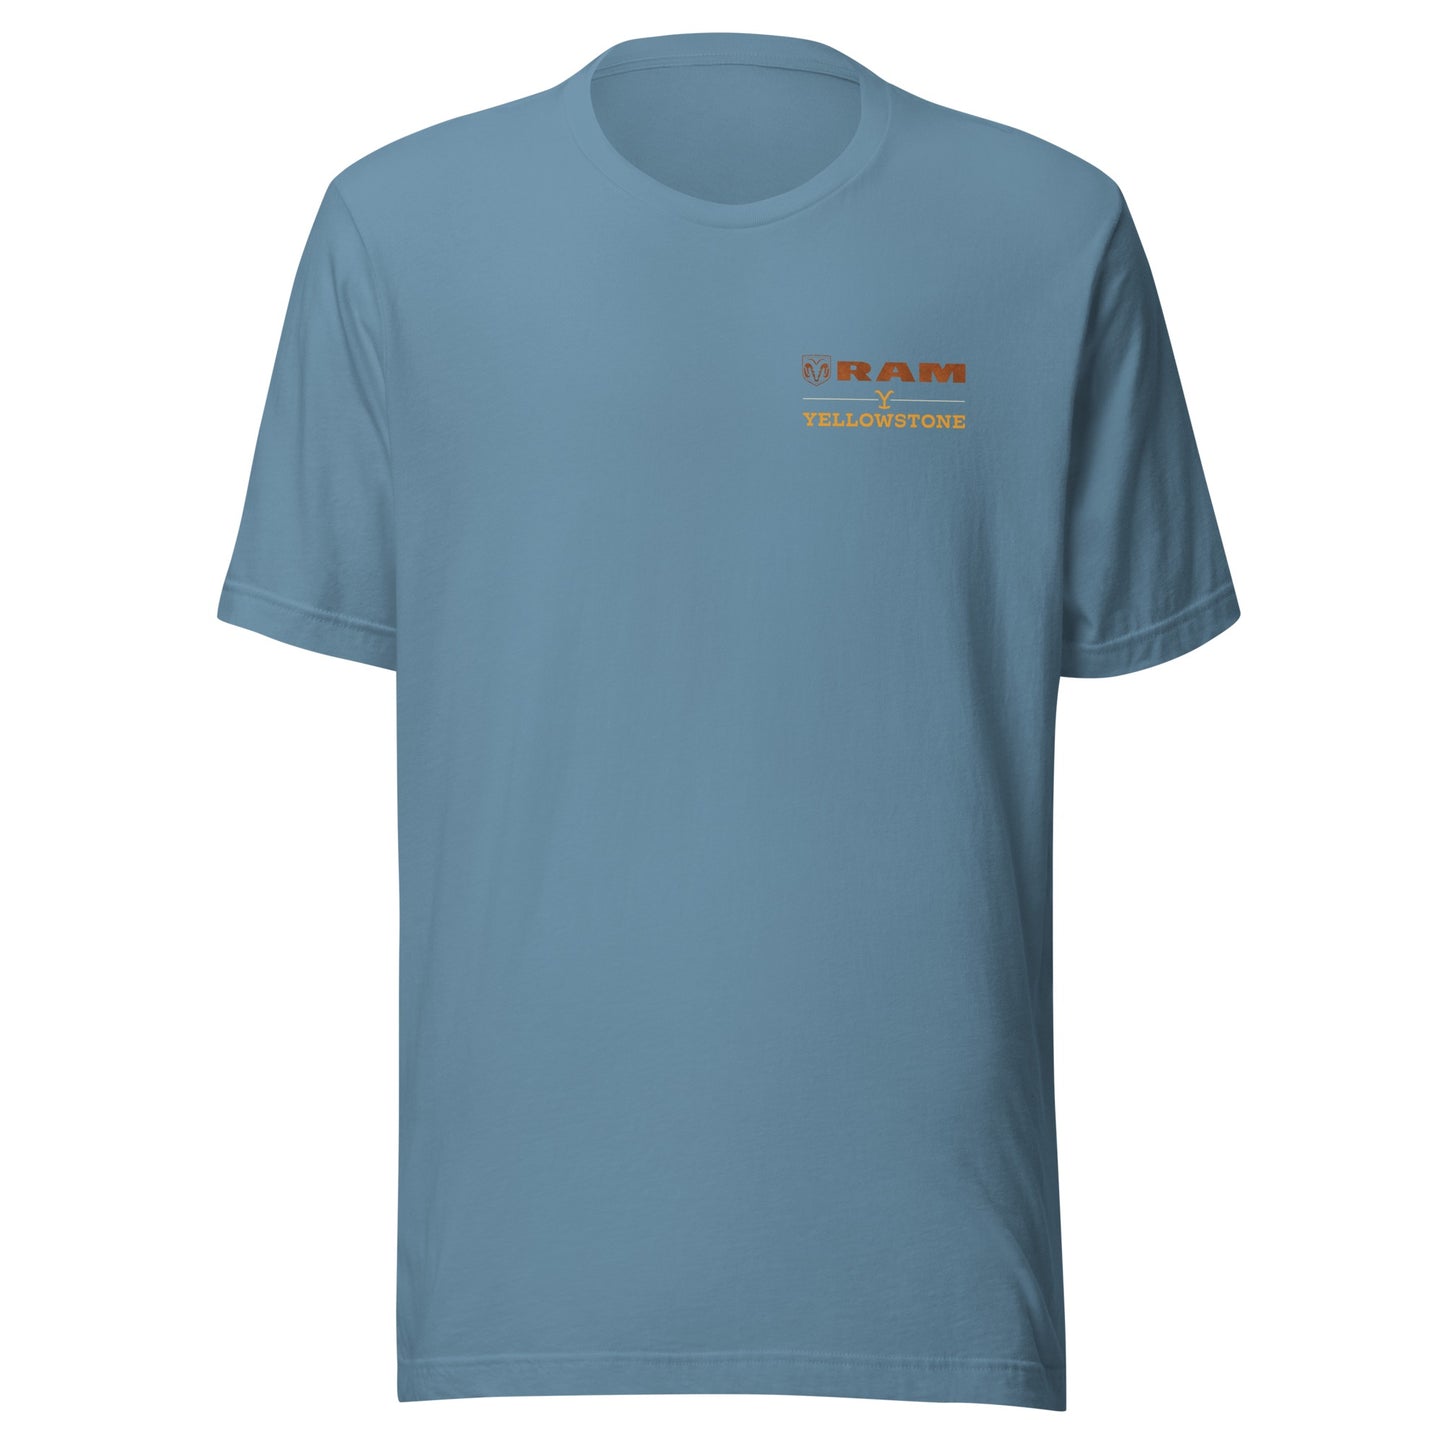 Yellowstone x Ram Scenic T-Shirt